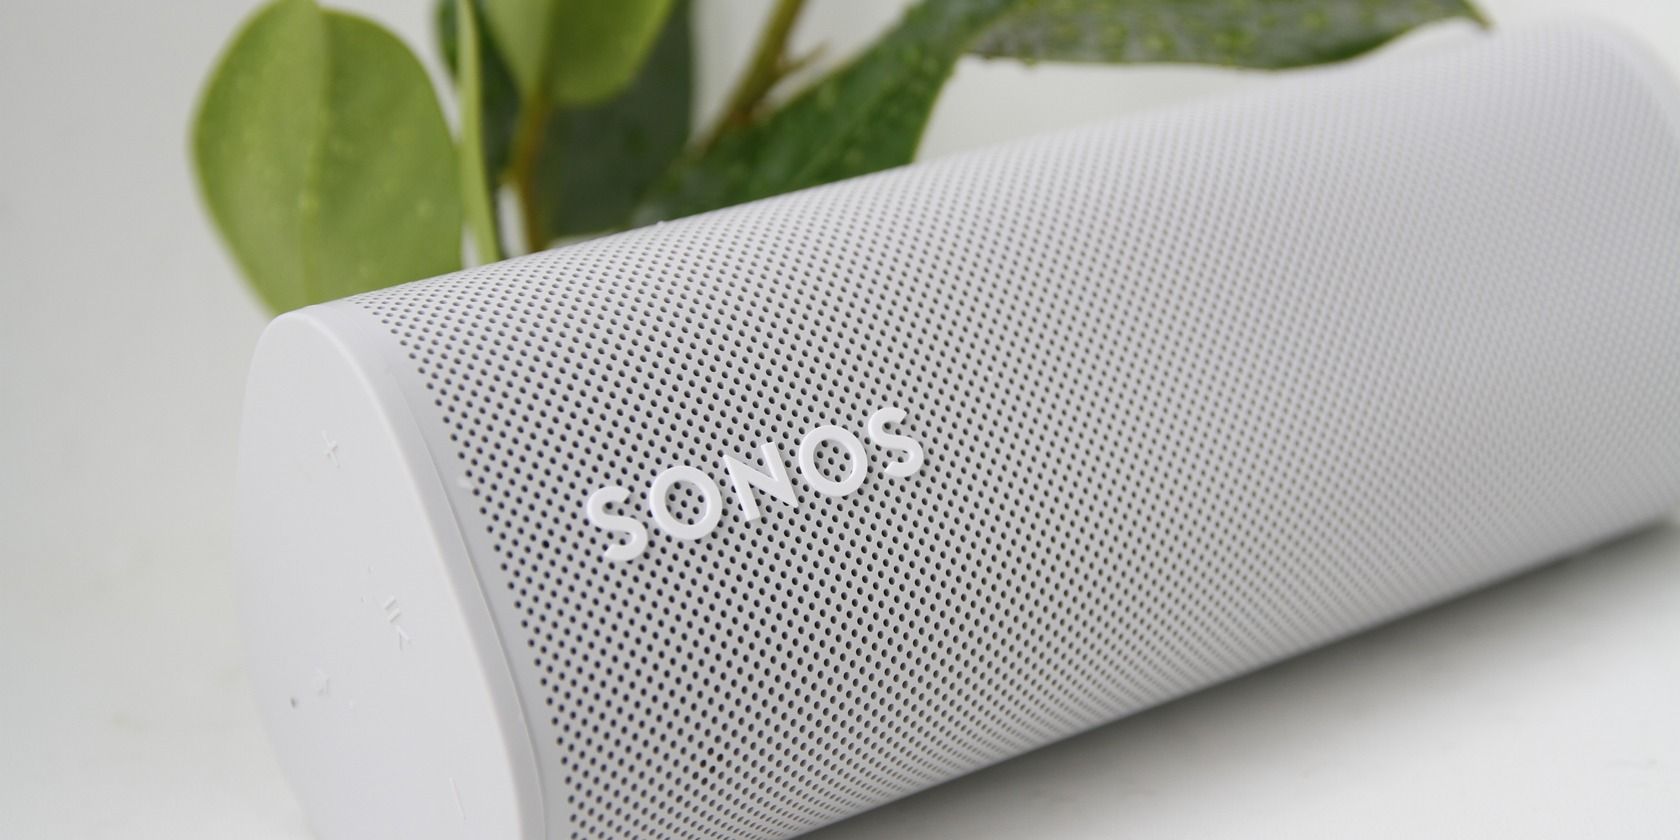 Sonos ROAM Portable Smart Speaker in white